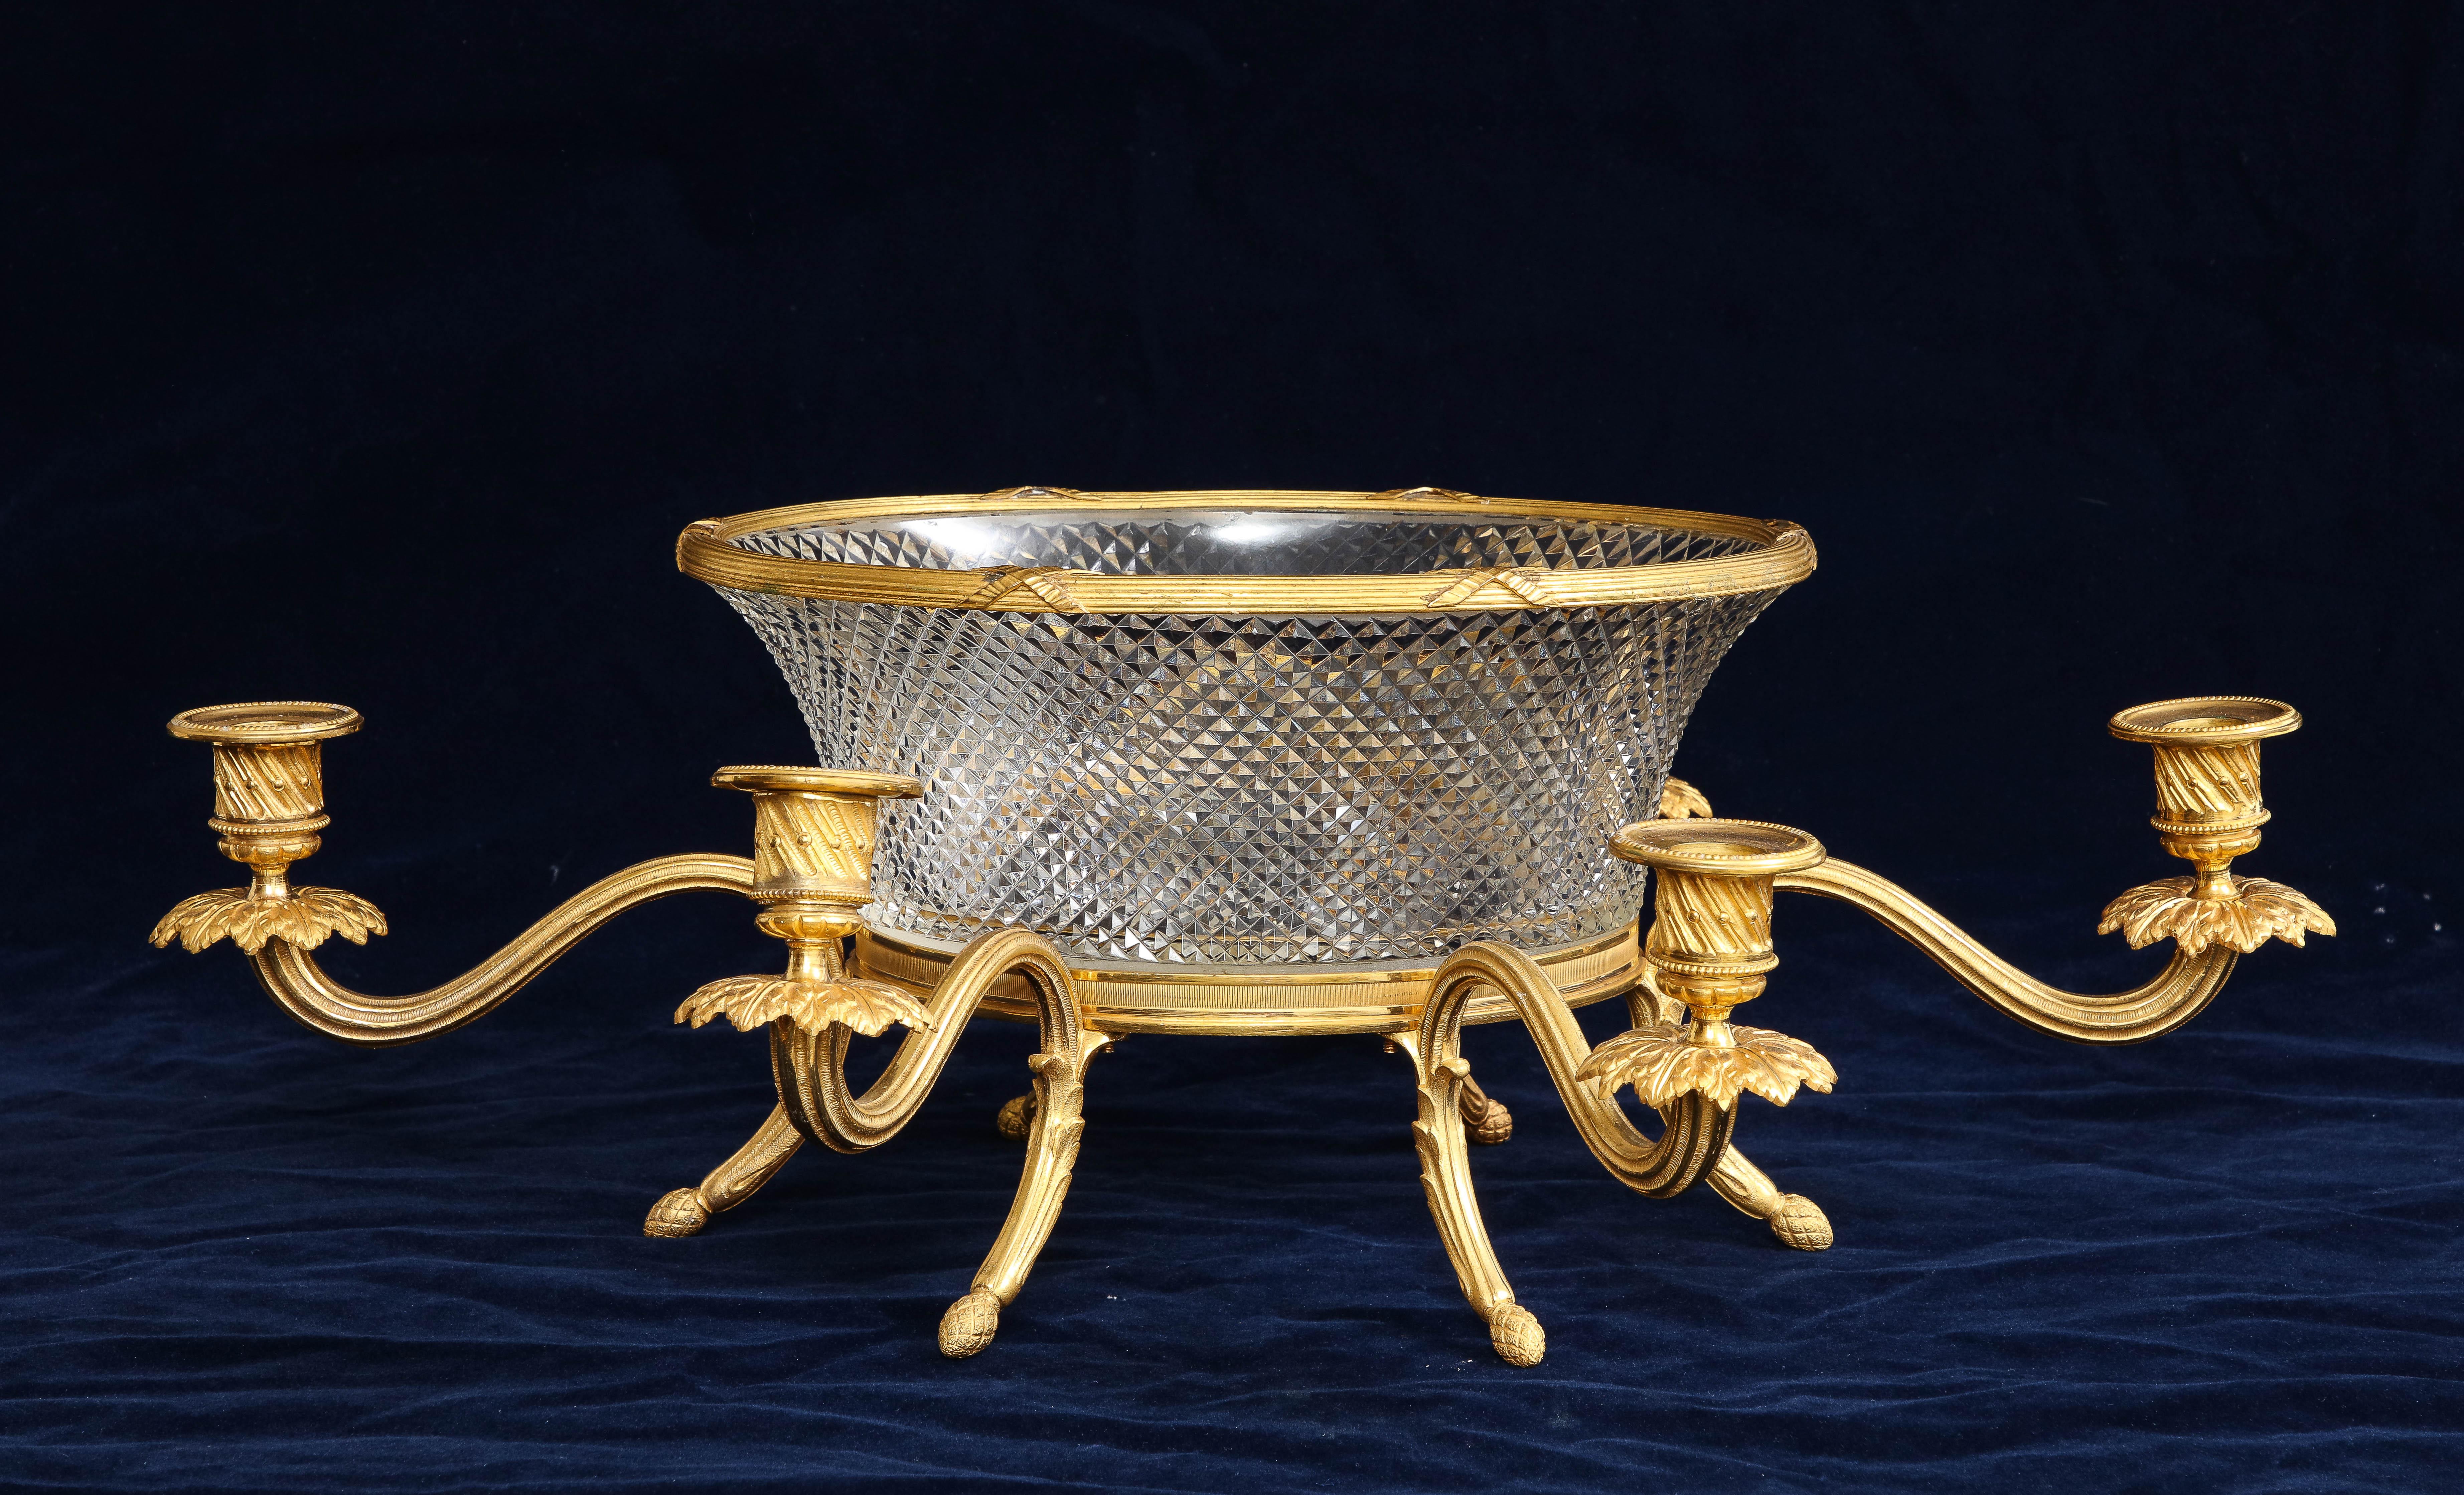 Centre de table/chandelier inhabituel en cristal français du 19e siècle monté en bronze doré, attribué à Baccarat. La coupe en cristal présente un magnifique motif prismatique taillé à la main.  Le cristal est également monté sur une magnifique